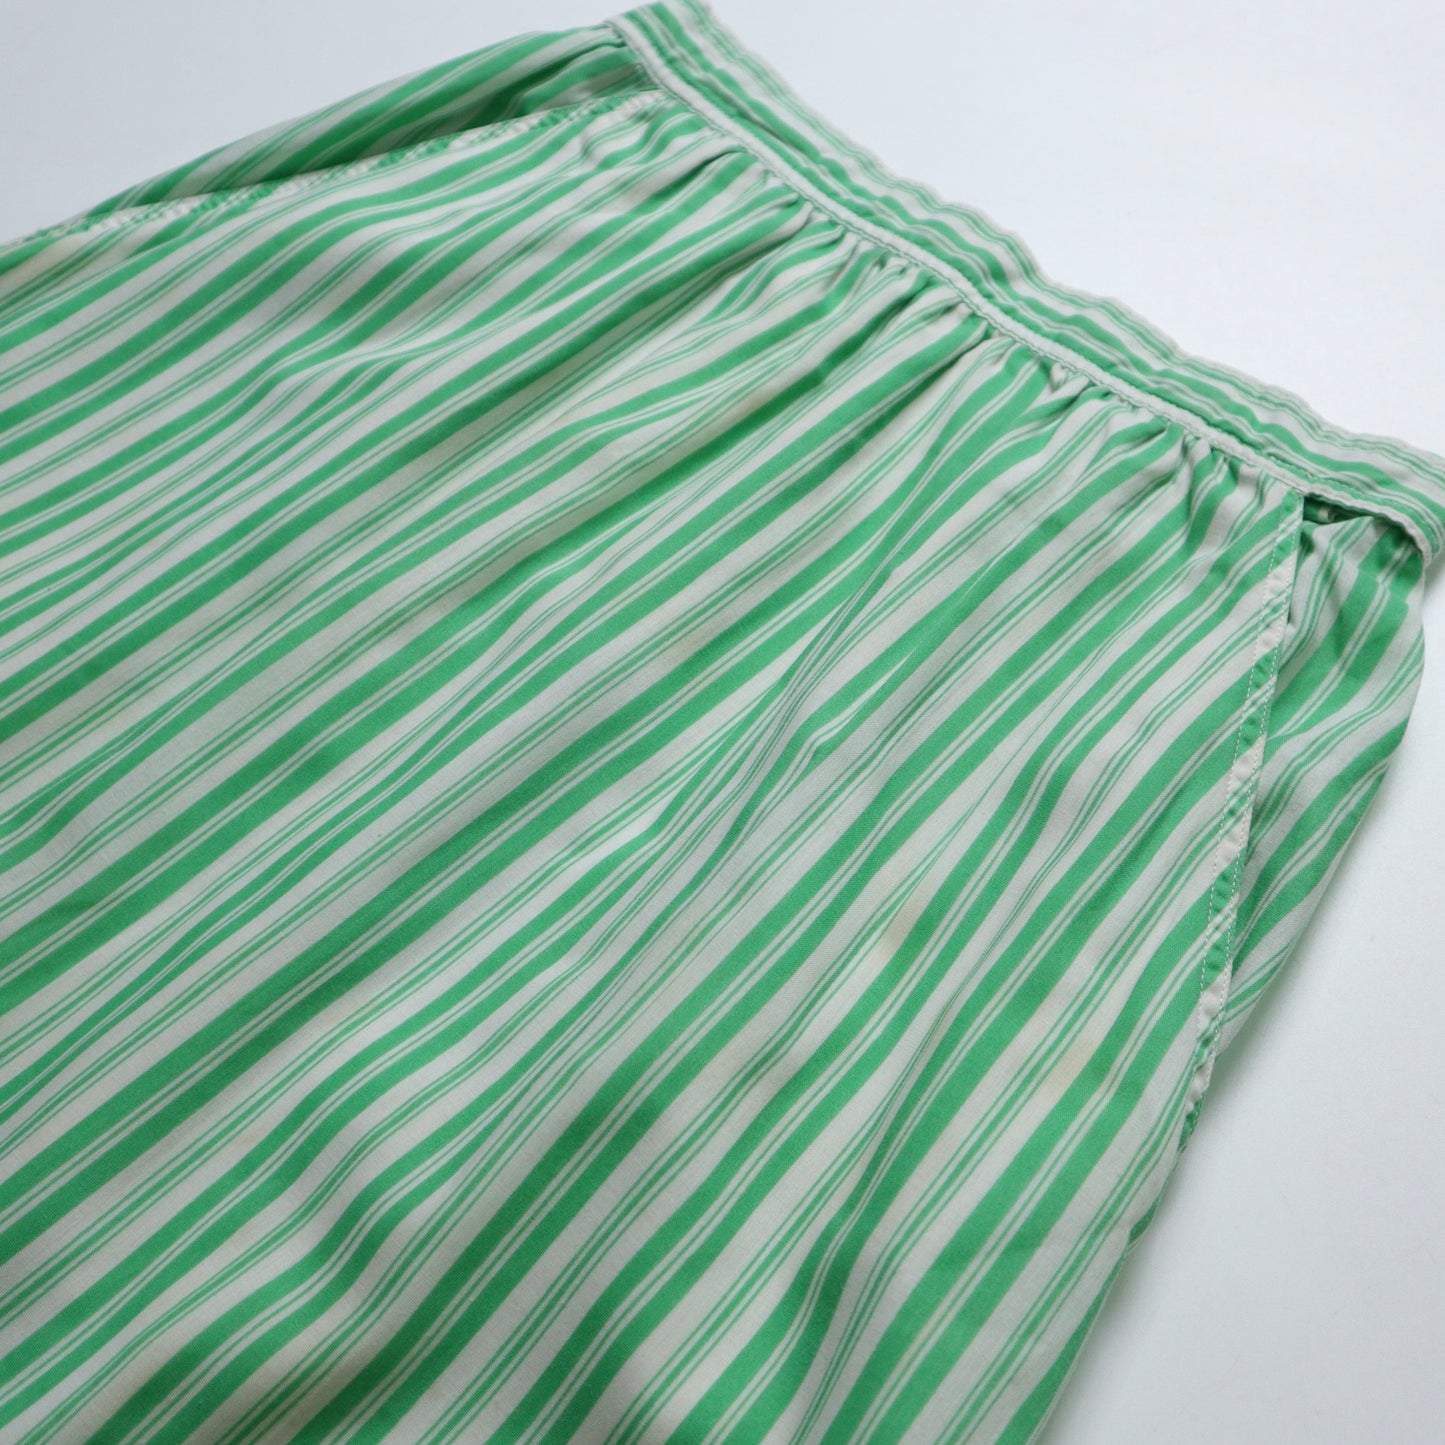 1970年代 アメリカ製 緑白ストライプスカート ILGWU/ユニオン製